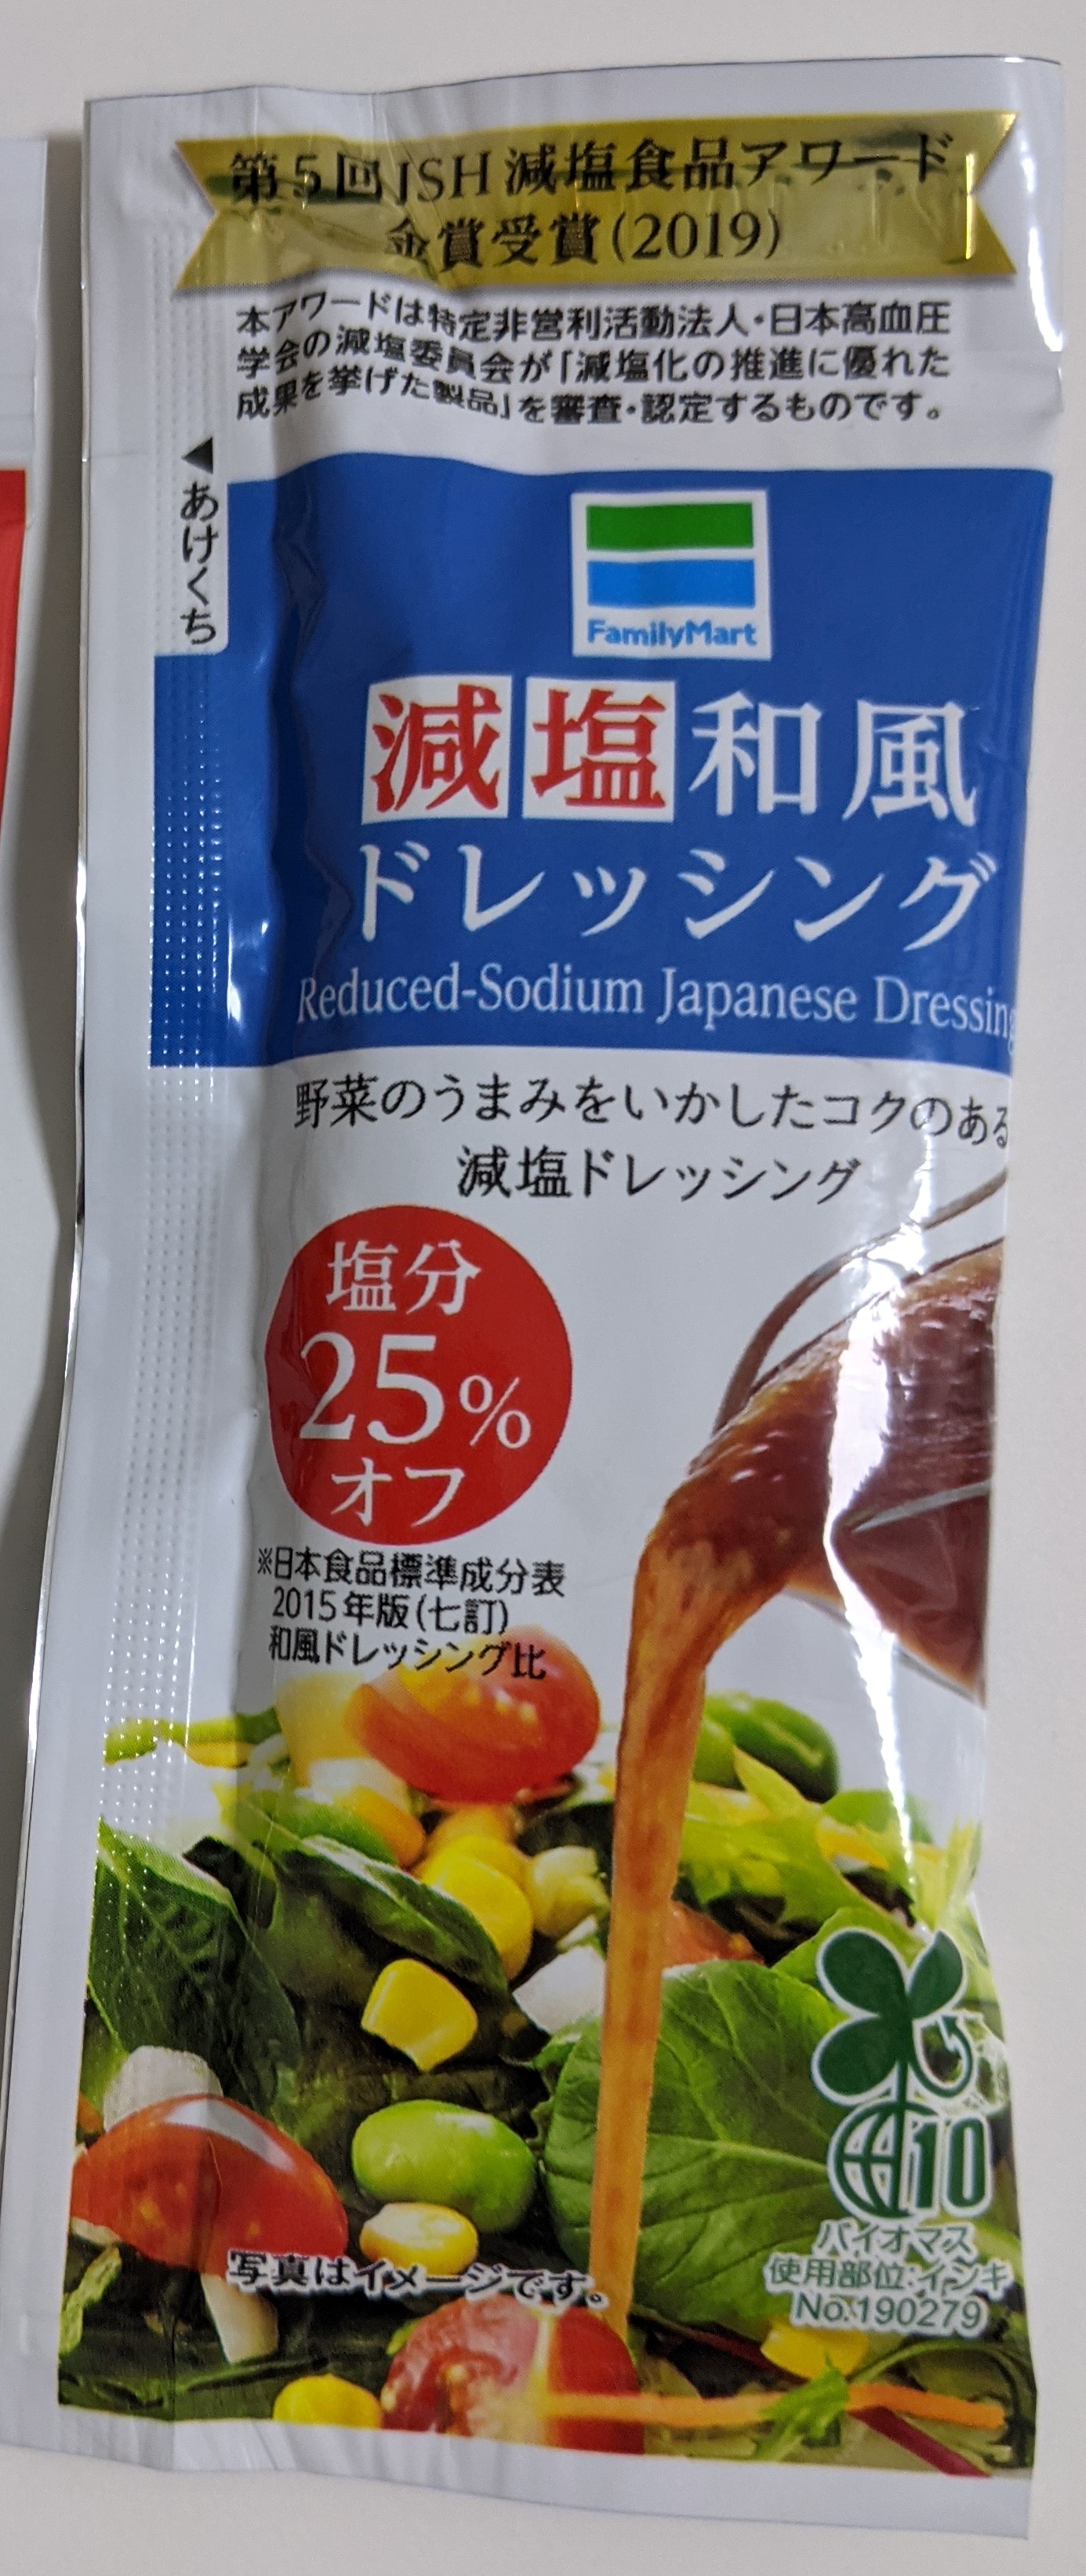 Family Mart Reduced-Sodium Japanese Dressing